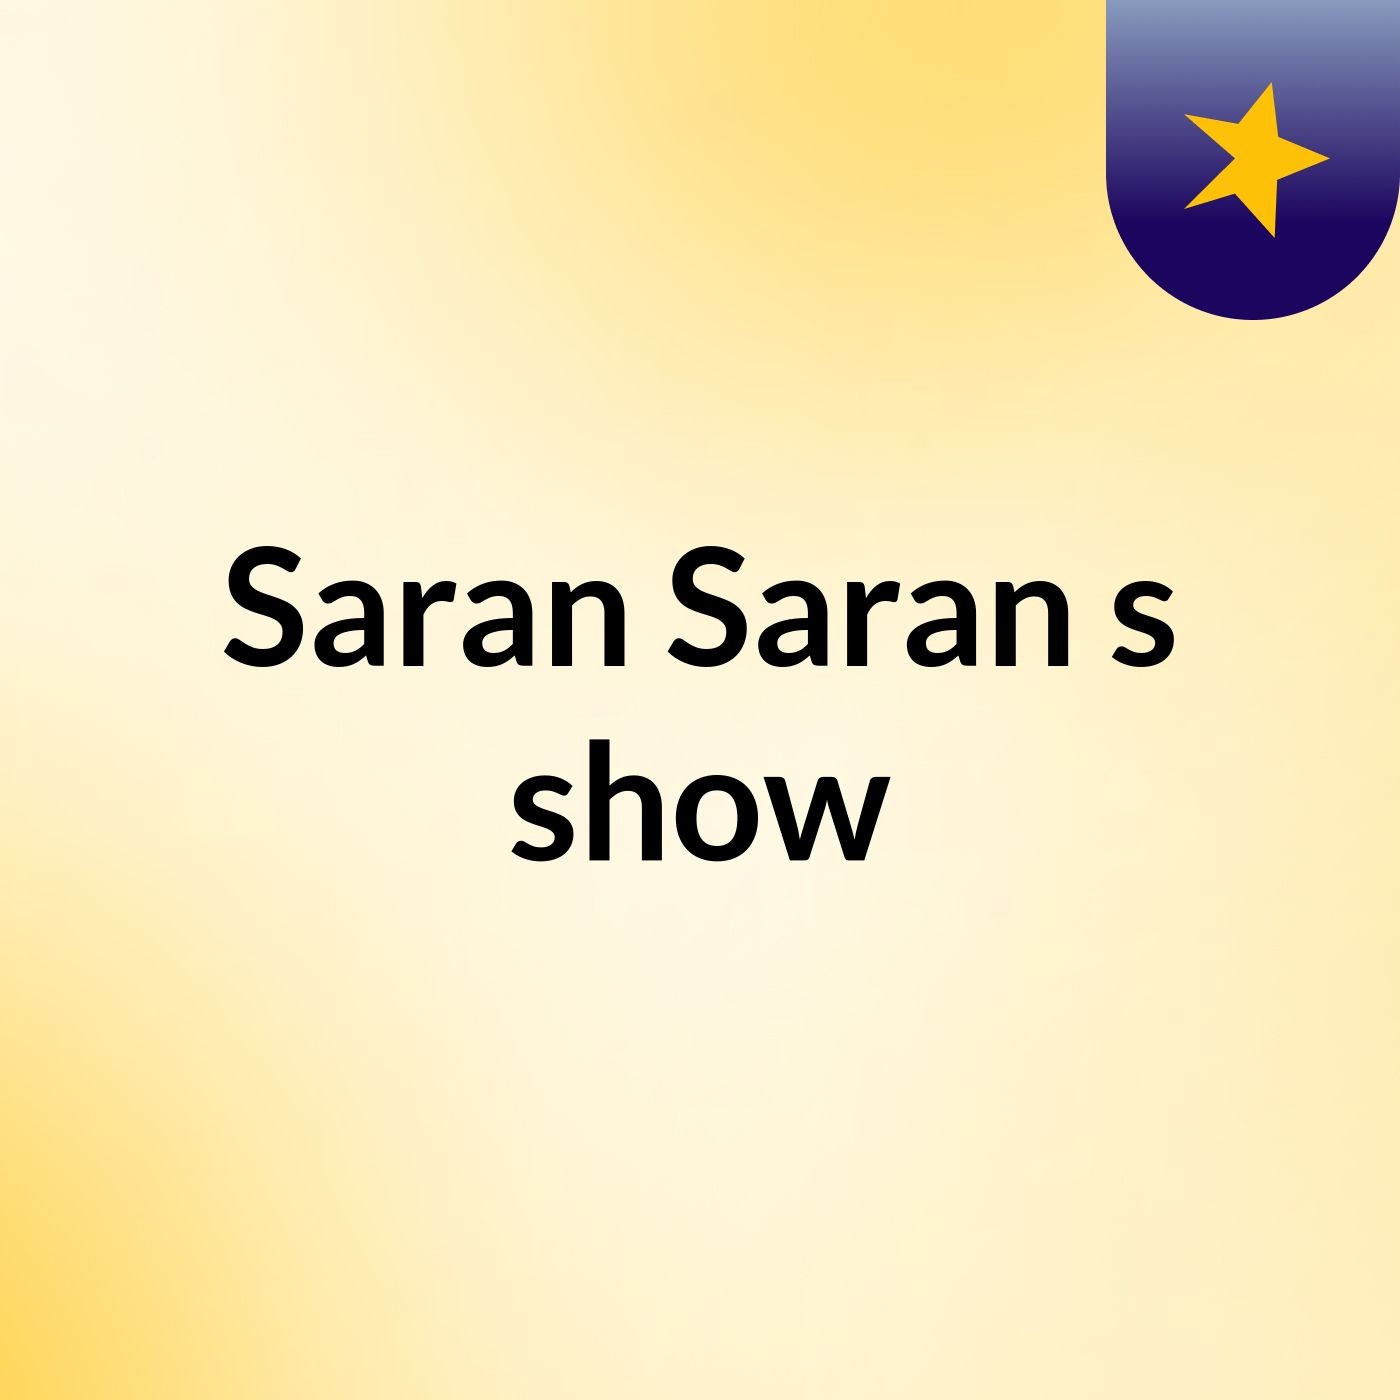 Saran Saran's show